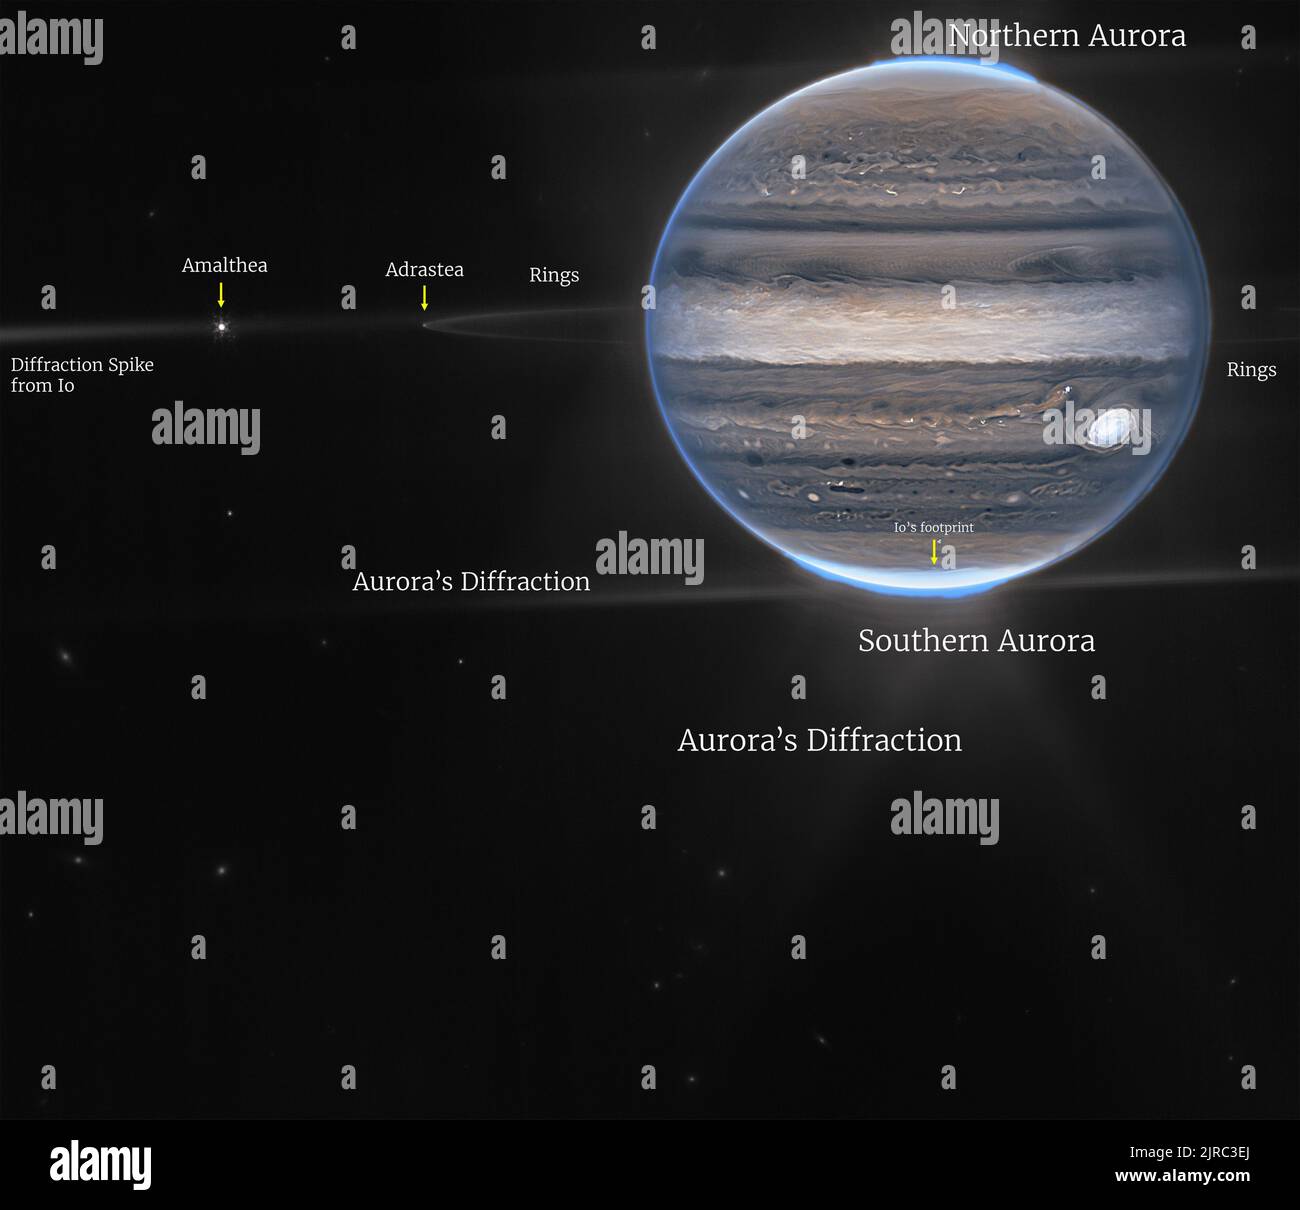 James Webb Space Telescope della NASA ha catturato nuove immagini di Giove, mostrando le tempeste giganti del pianeta, i venti potenti, le aurore e le condizioni estreme di temperatura e pressione. Le due immagini provengono dalla Near-Infrared Camera dell'osservatorio (NIRCam), che ha tre filtri infrarossi specializzati che mostrano i dettagli del pianeta. Poiché la luce infrarossa è invisibile all'occhio umano, la luce è stata mappata sullo spettro visibile. Generalmente, le lunghezze d'onda più lunghe appaiono più rosse, e le lunghezze d'onda più corte sono mostrate come più blu. Credit: UPI/Alamy Live News Foto Stock